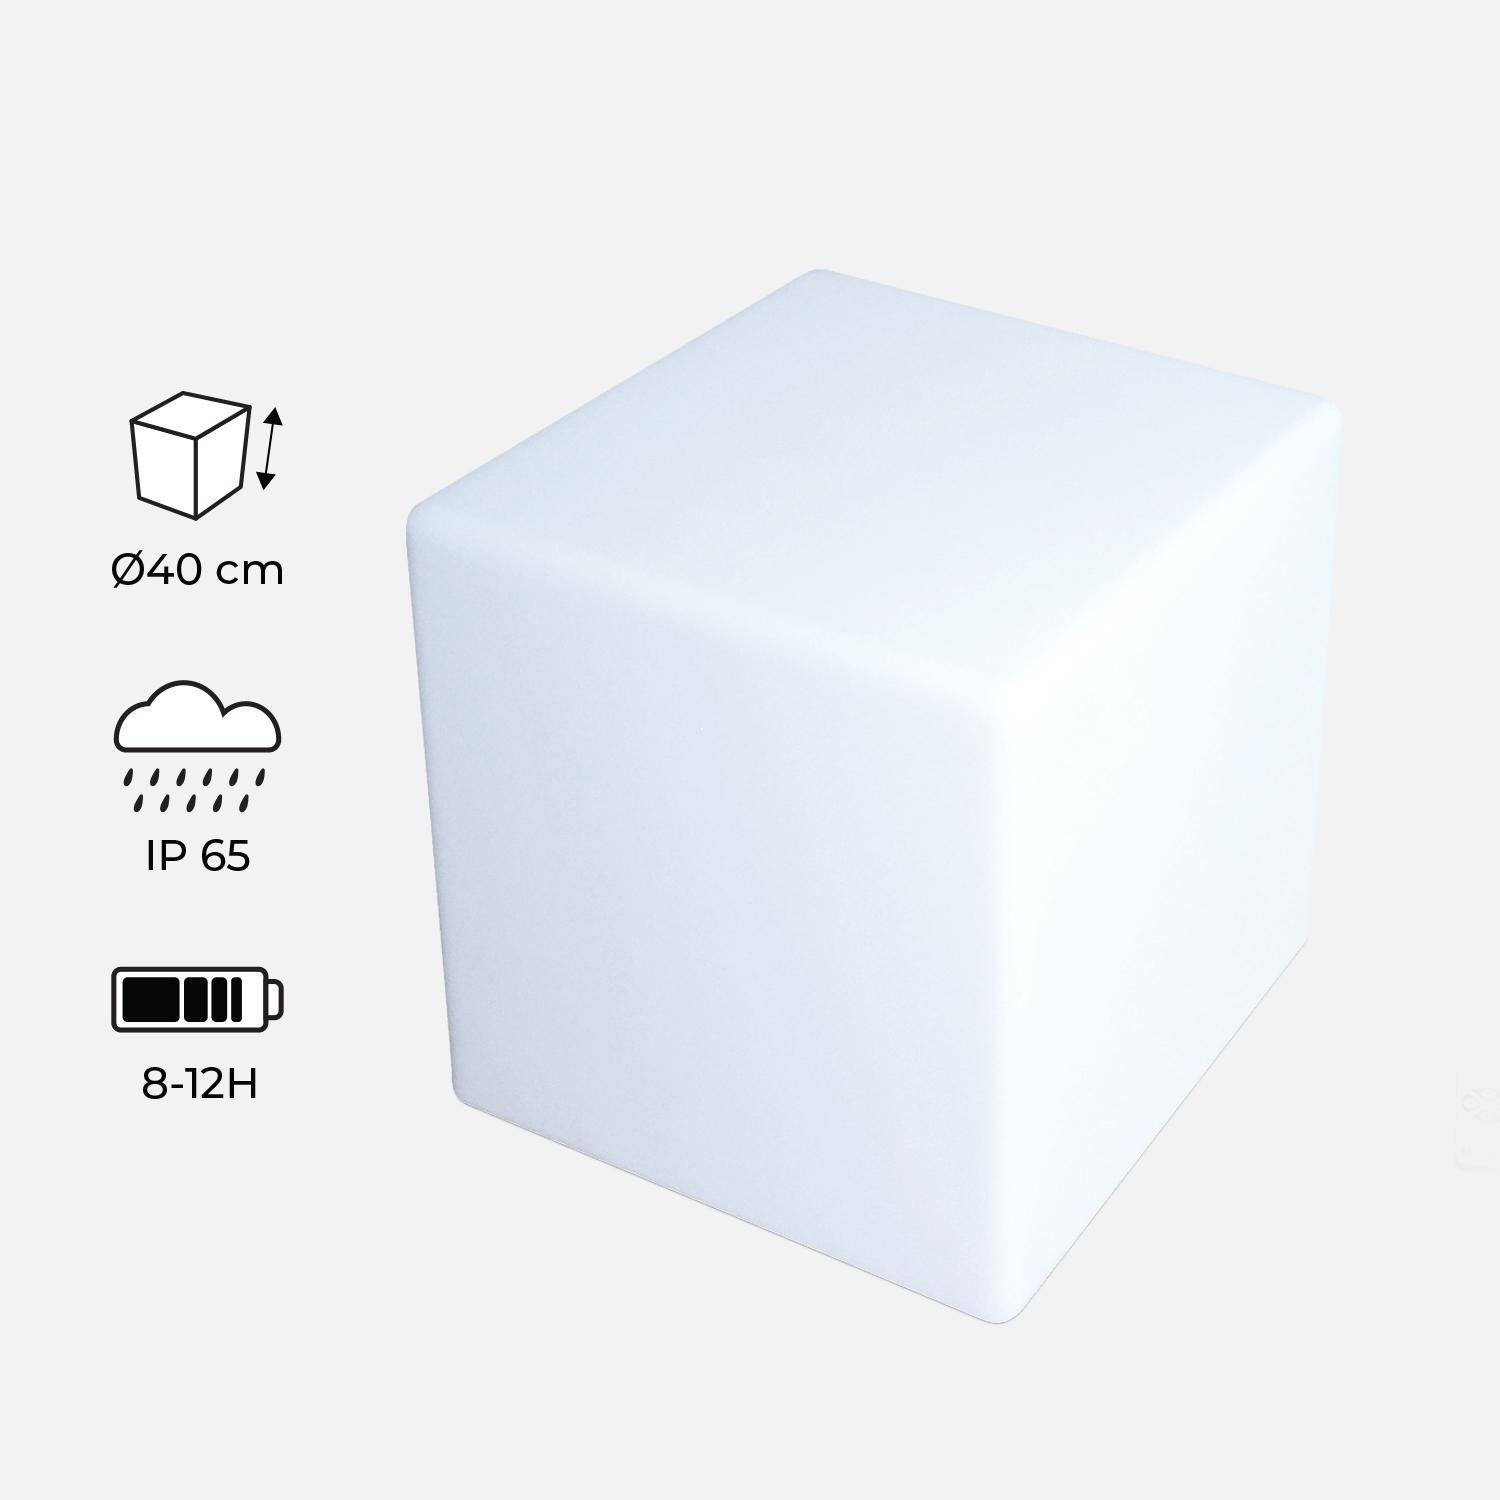 Cube LED 40cm – Cube décoratif lumineux, 40x40cm, blanc chaud, commande à distance Photo2